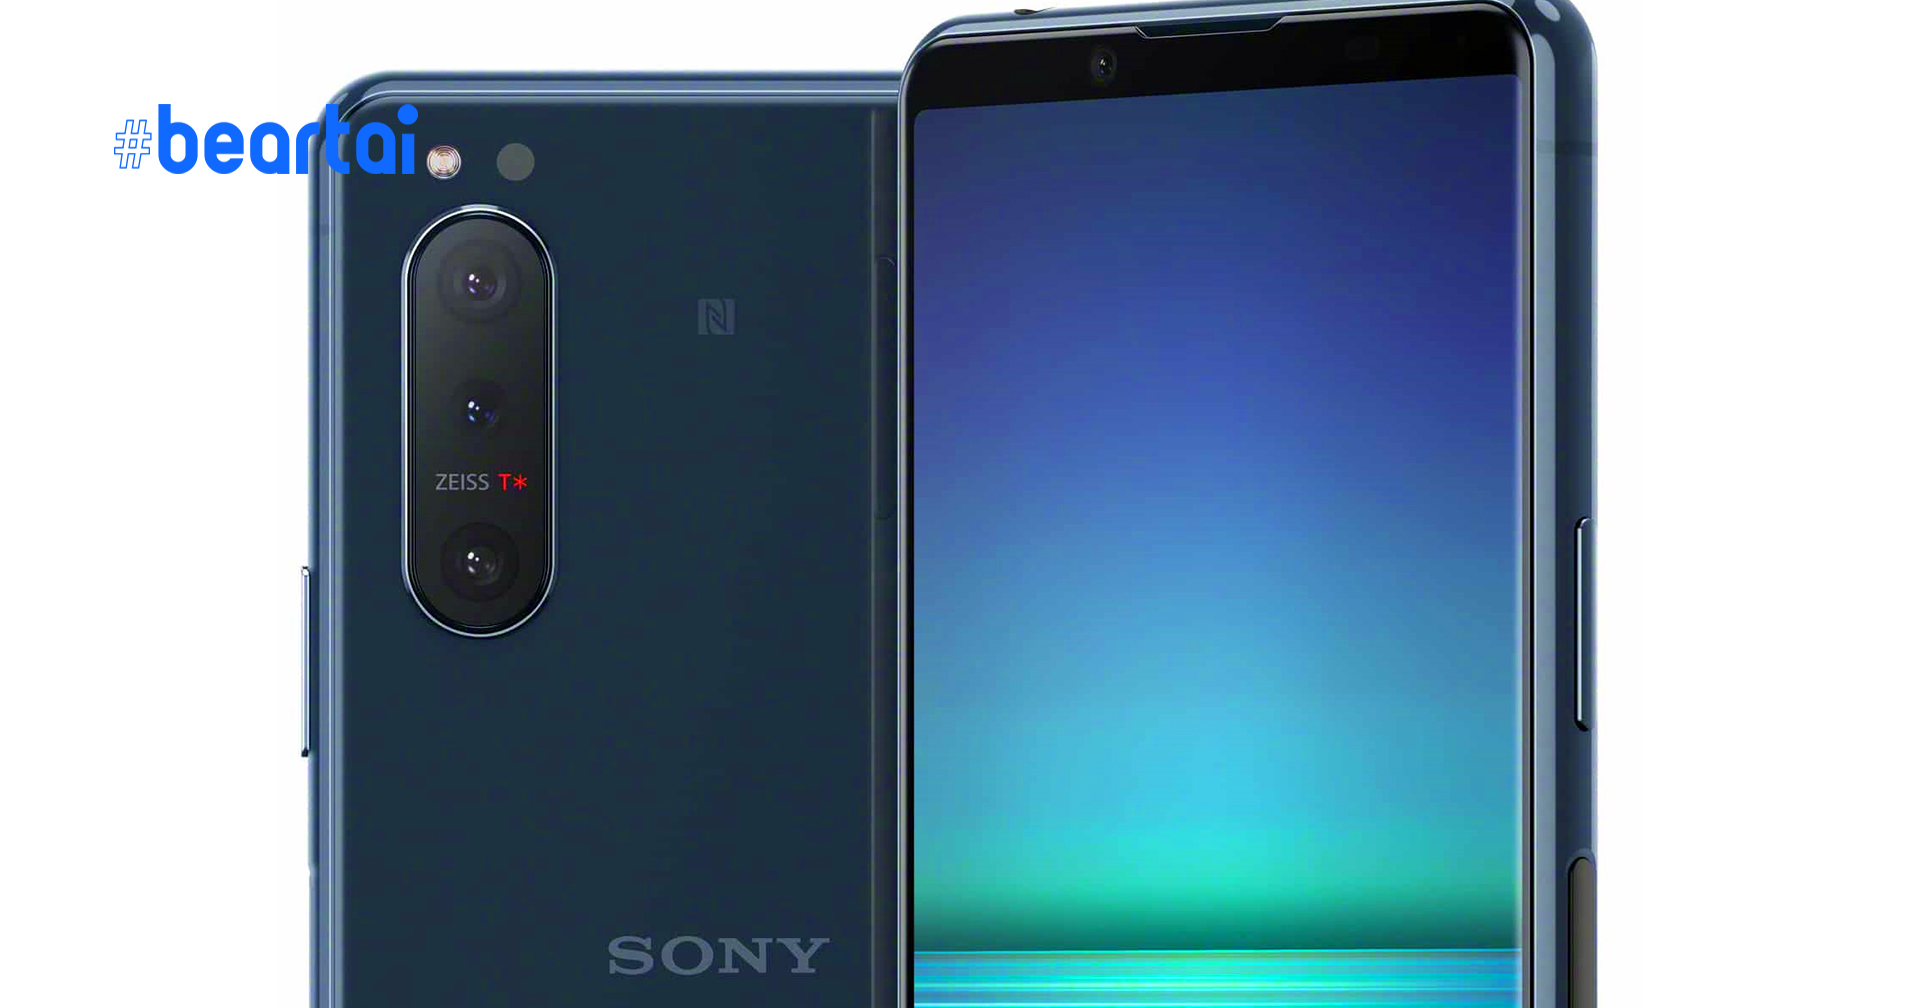 หลุดวิดีโอโปรโมต Sony Xperia 5 II ล่าสุด : ดีไซน์เรียบหรู, สเปกสุดแรง, กล้องทรงพลัง